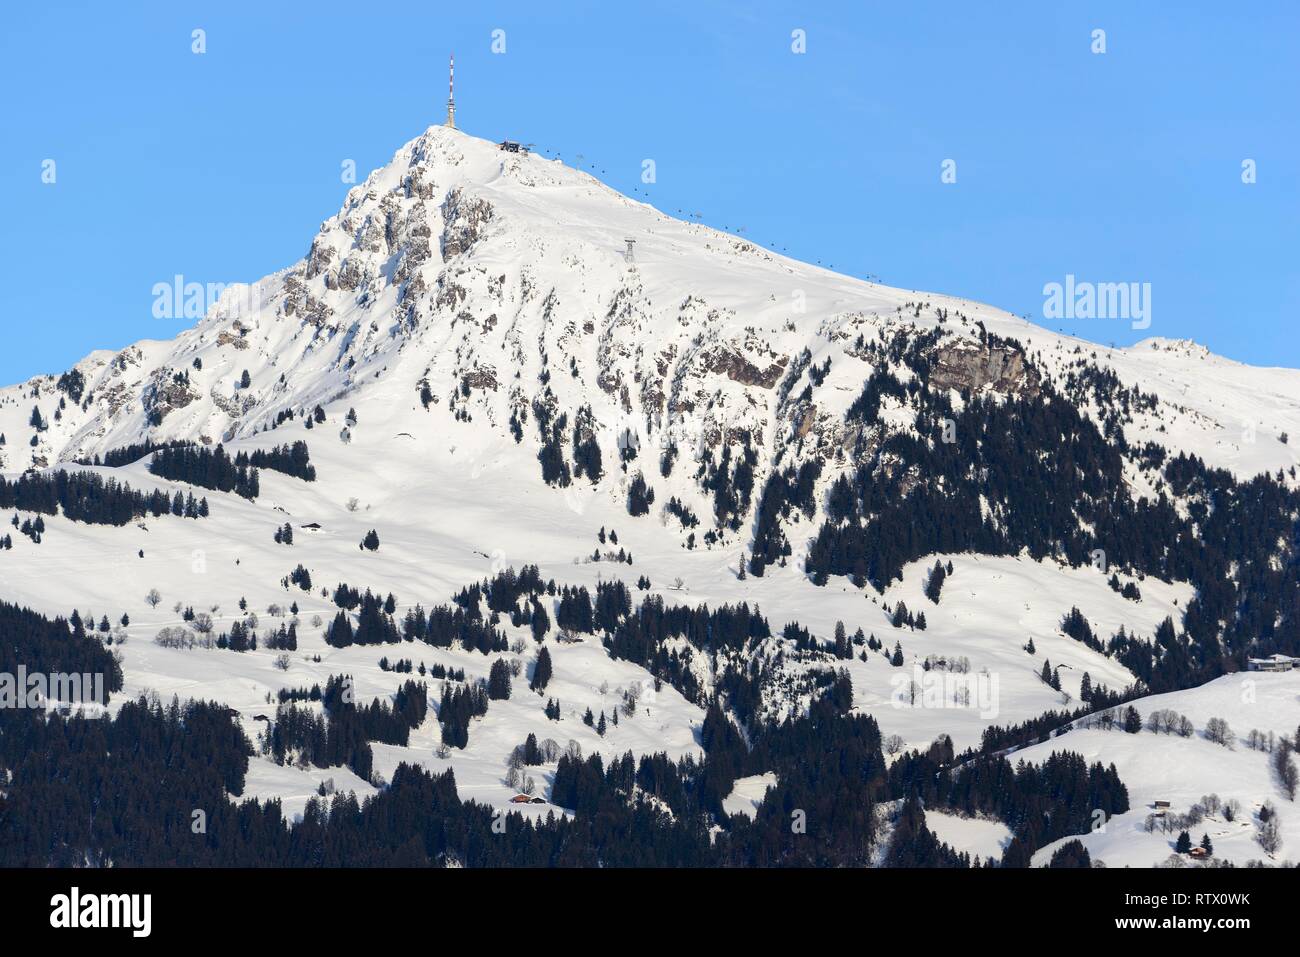 Snow-covered mountain Kitzbüheler Horn in winter, Kitzbühel, Tyrol, Austria Stock Photo